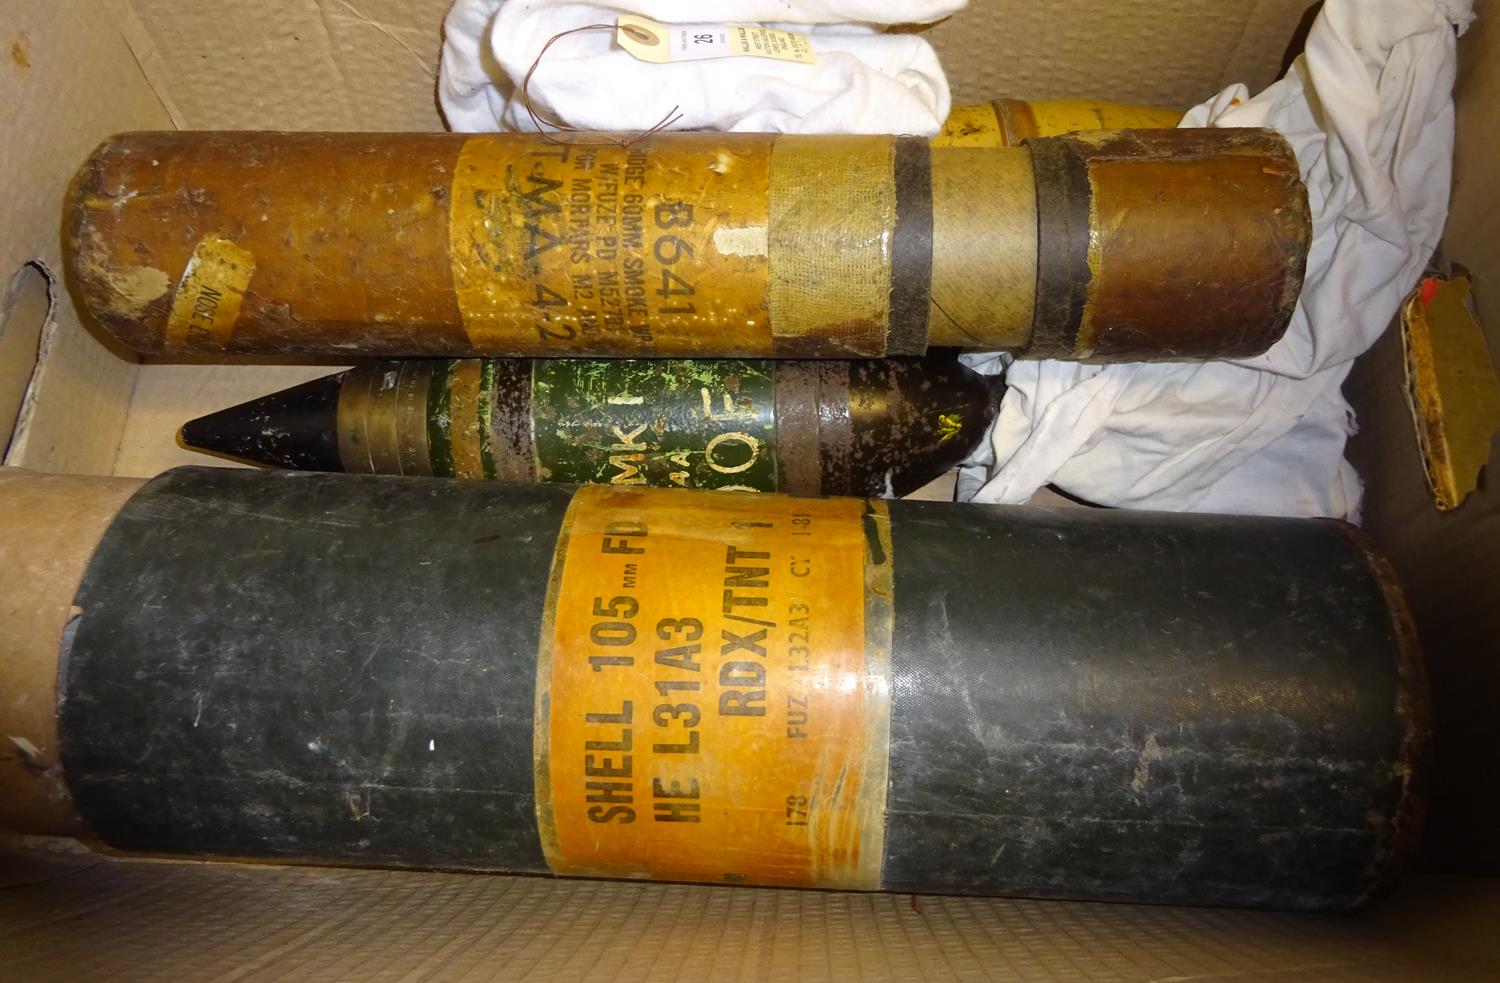 A 3" mortar bomb, flash bem, a shell head, a fibre container for a US 60mm mortar smoke cartridge;